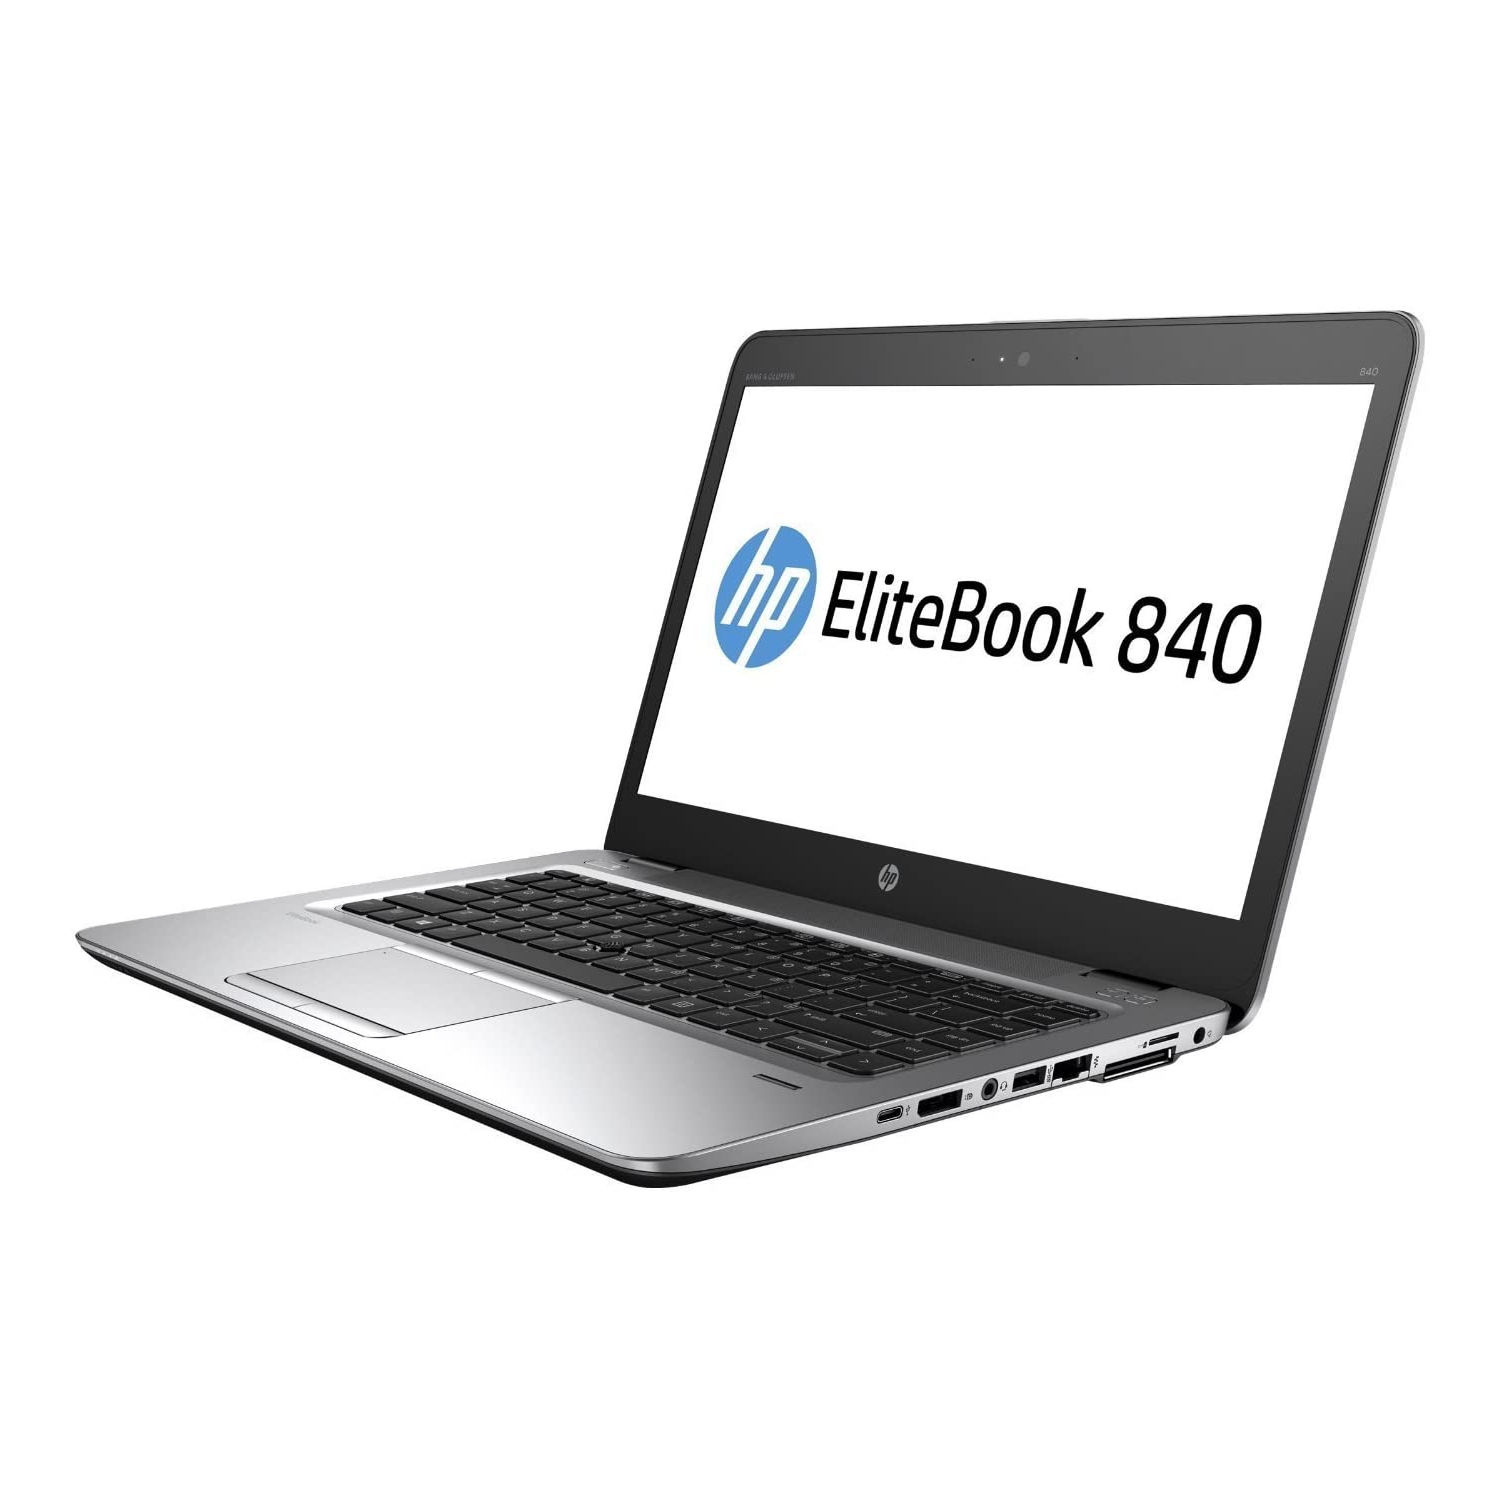 Refurbished (Good) - HP EliteBook 840 G3 14" Laptop, Intel Core i5-6300U, 8GB DDR4, (DUAL DRIVES), FAST 256 GB M.2 SSD + 500 GB HDD, Windows 10 Pro